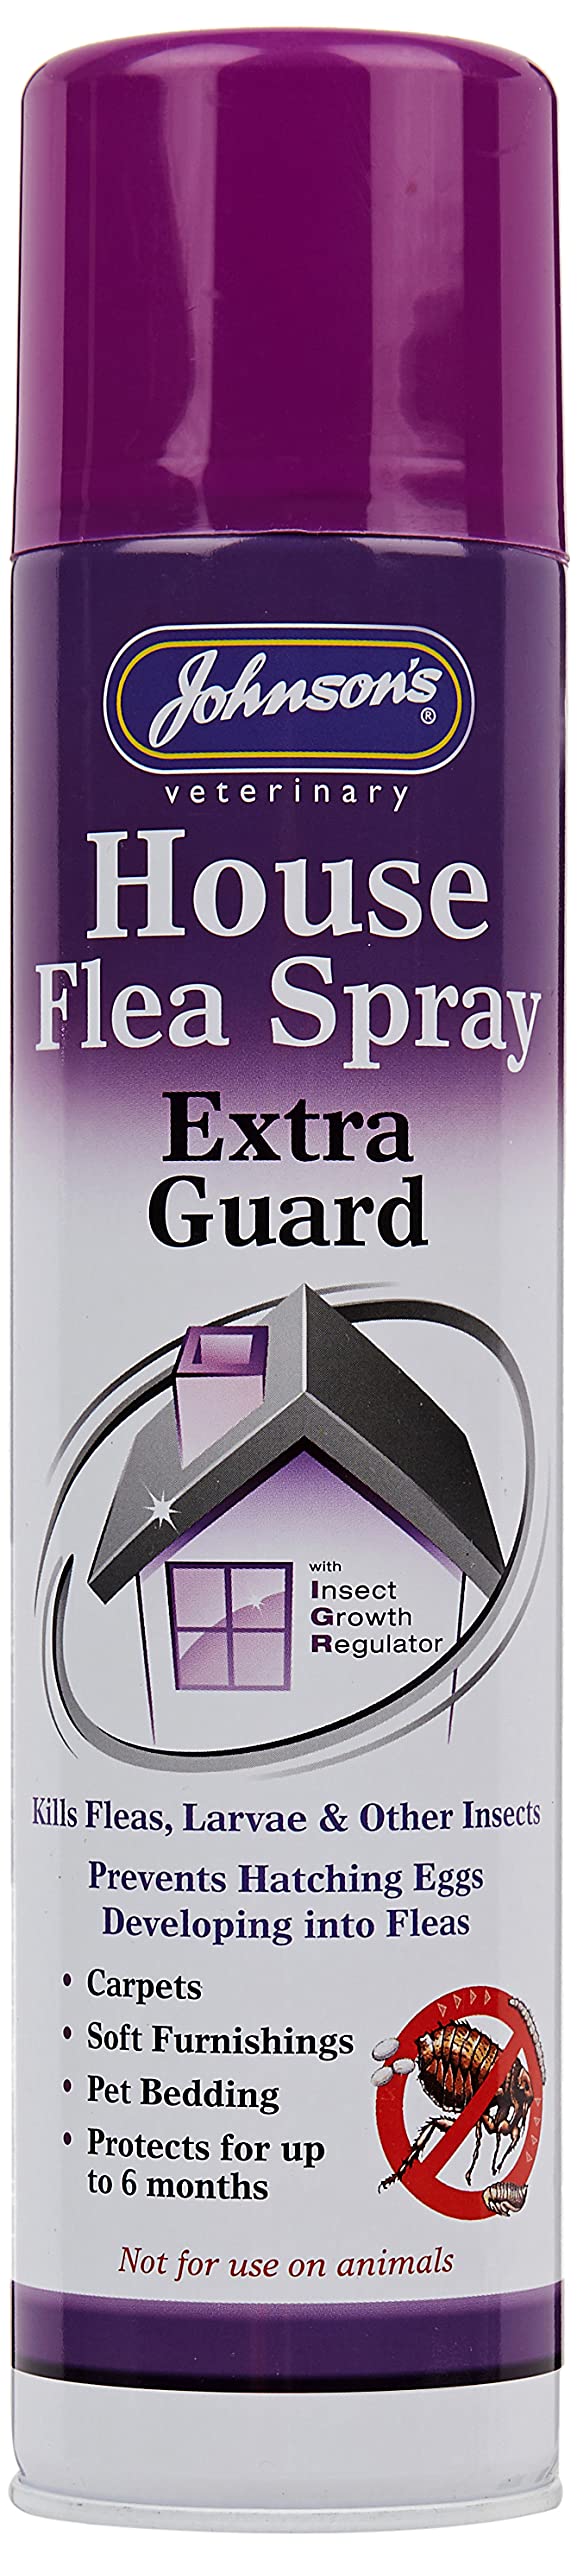 Johnson's Extra Guard House Flea Spray, 400 ml - PawsPlanet Australia